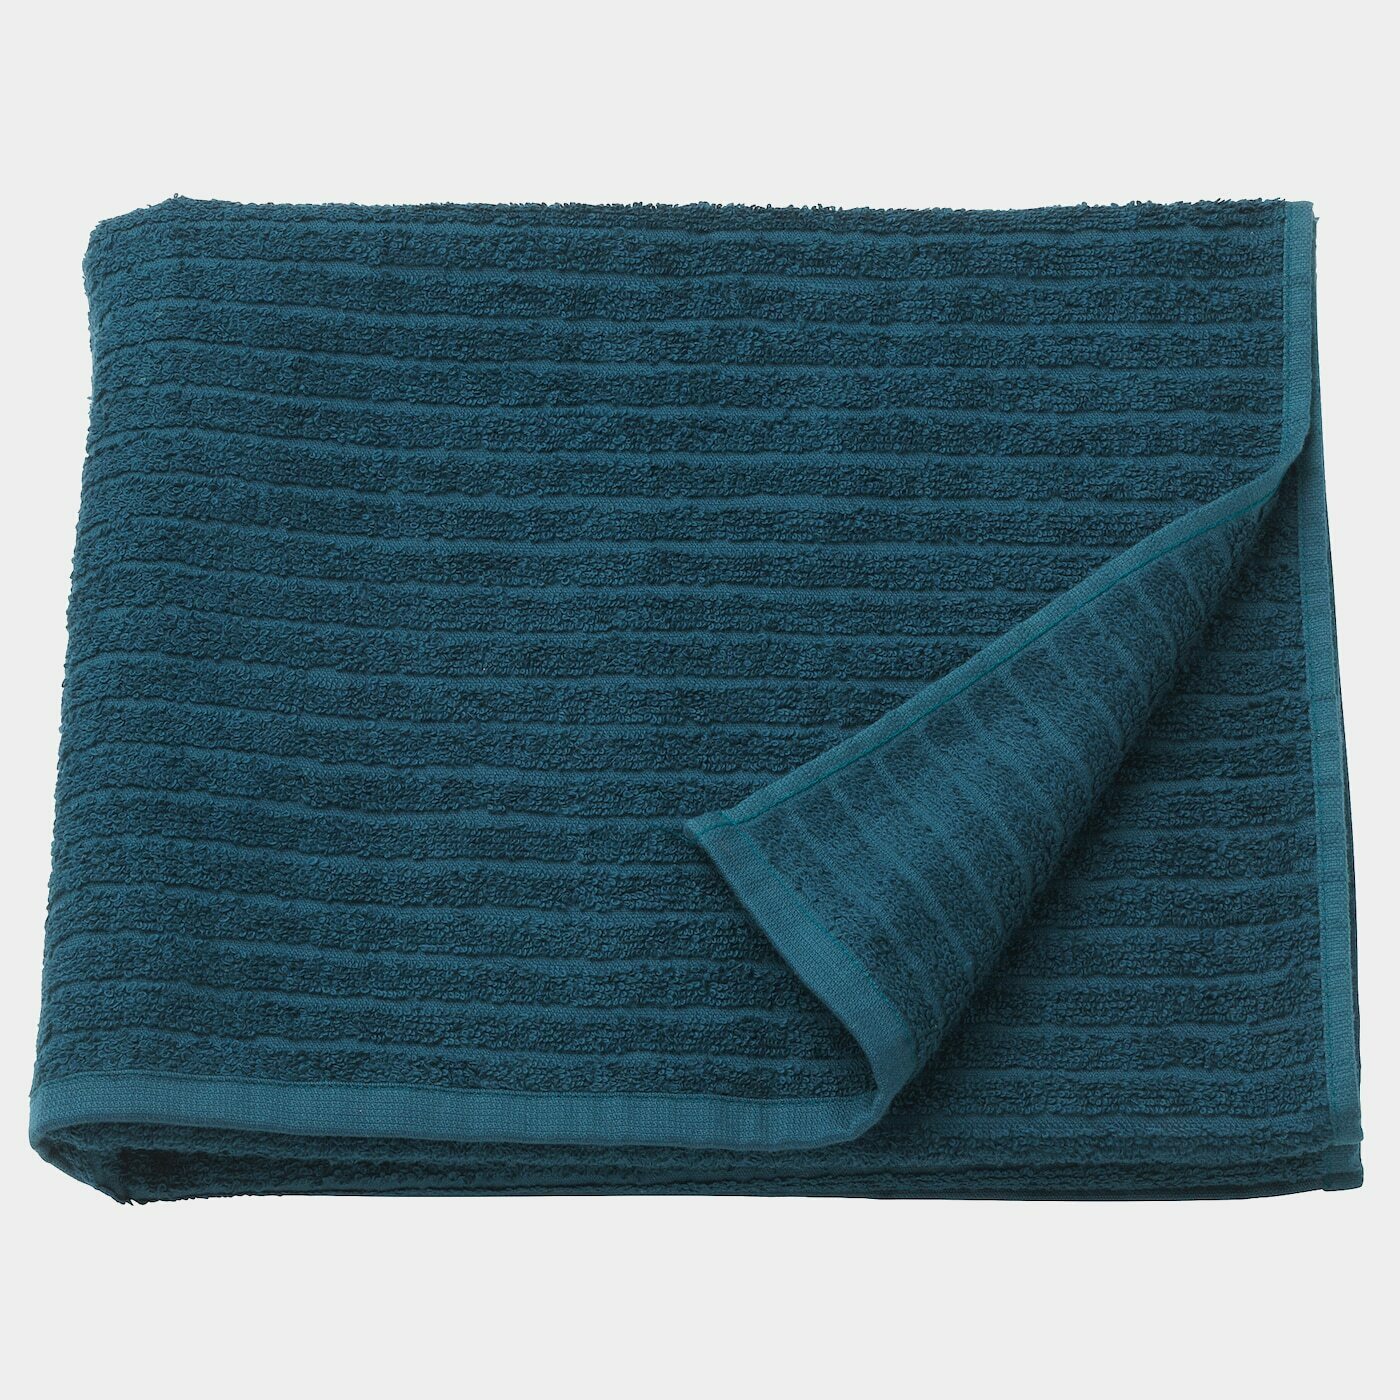 VÅGSJÖN Badetuch  - Handtücher - Textilien Ideen für dein Zuhause von Home Trends. Textilien Trends von Social Media Influencer für dein Skandi Zuhause.